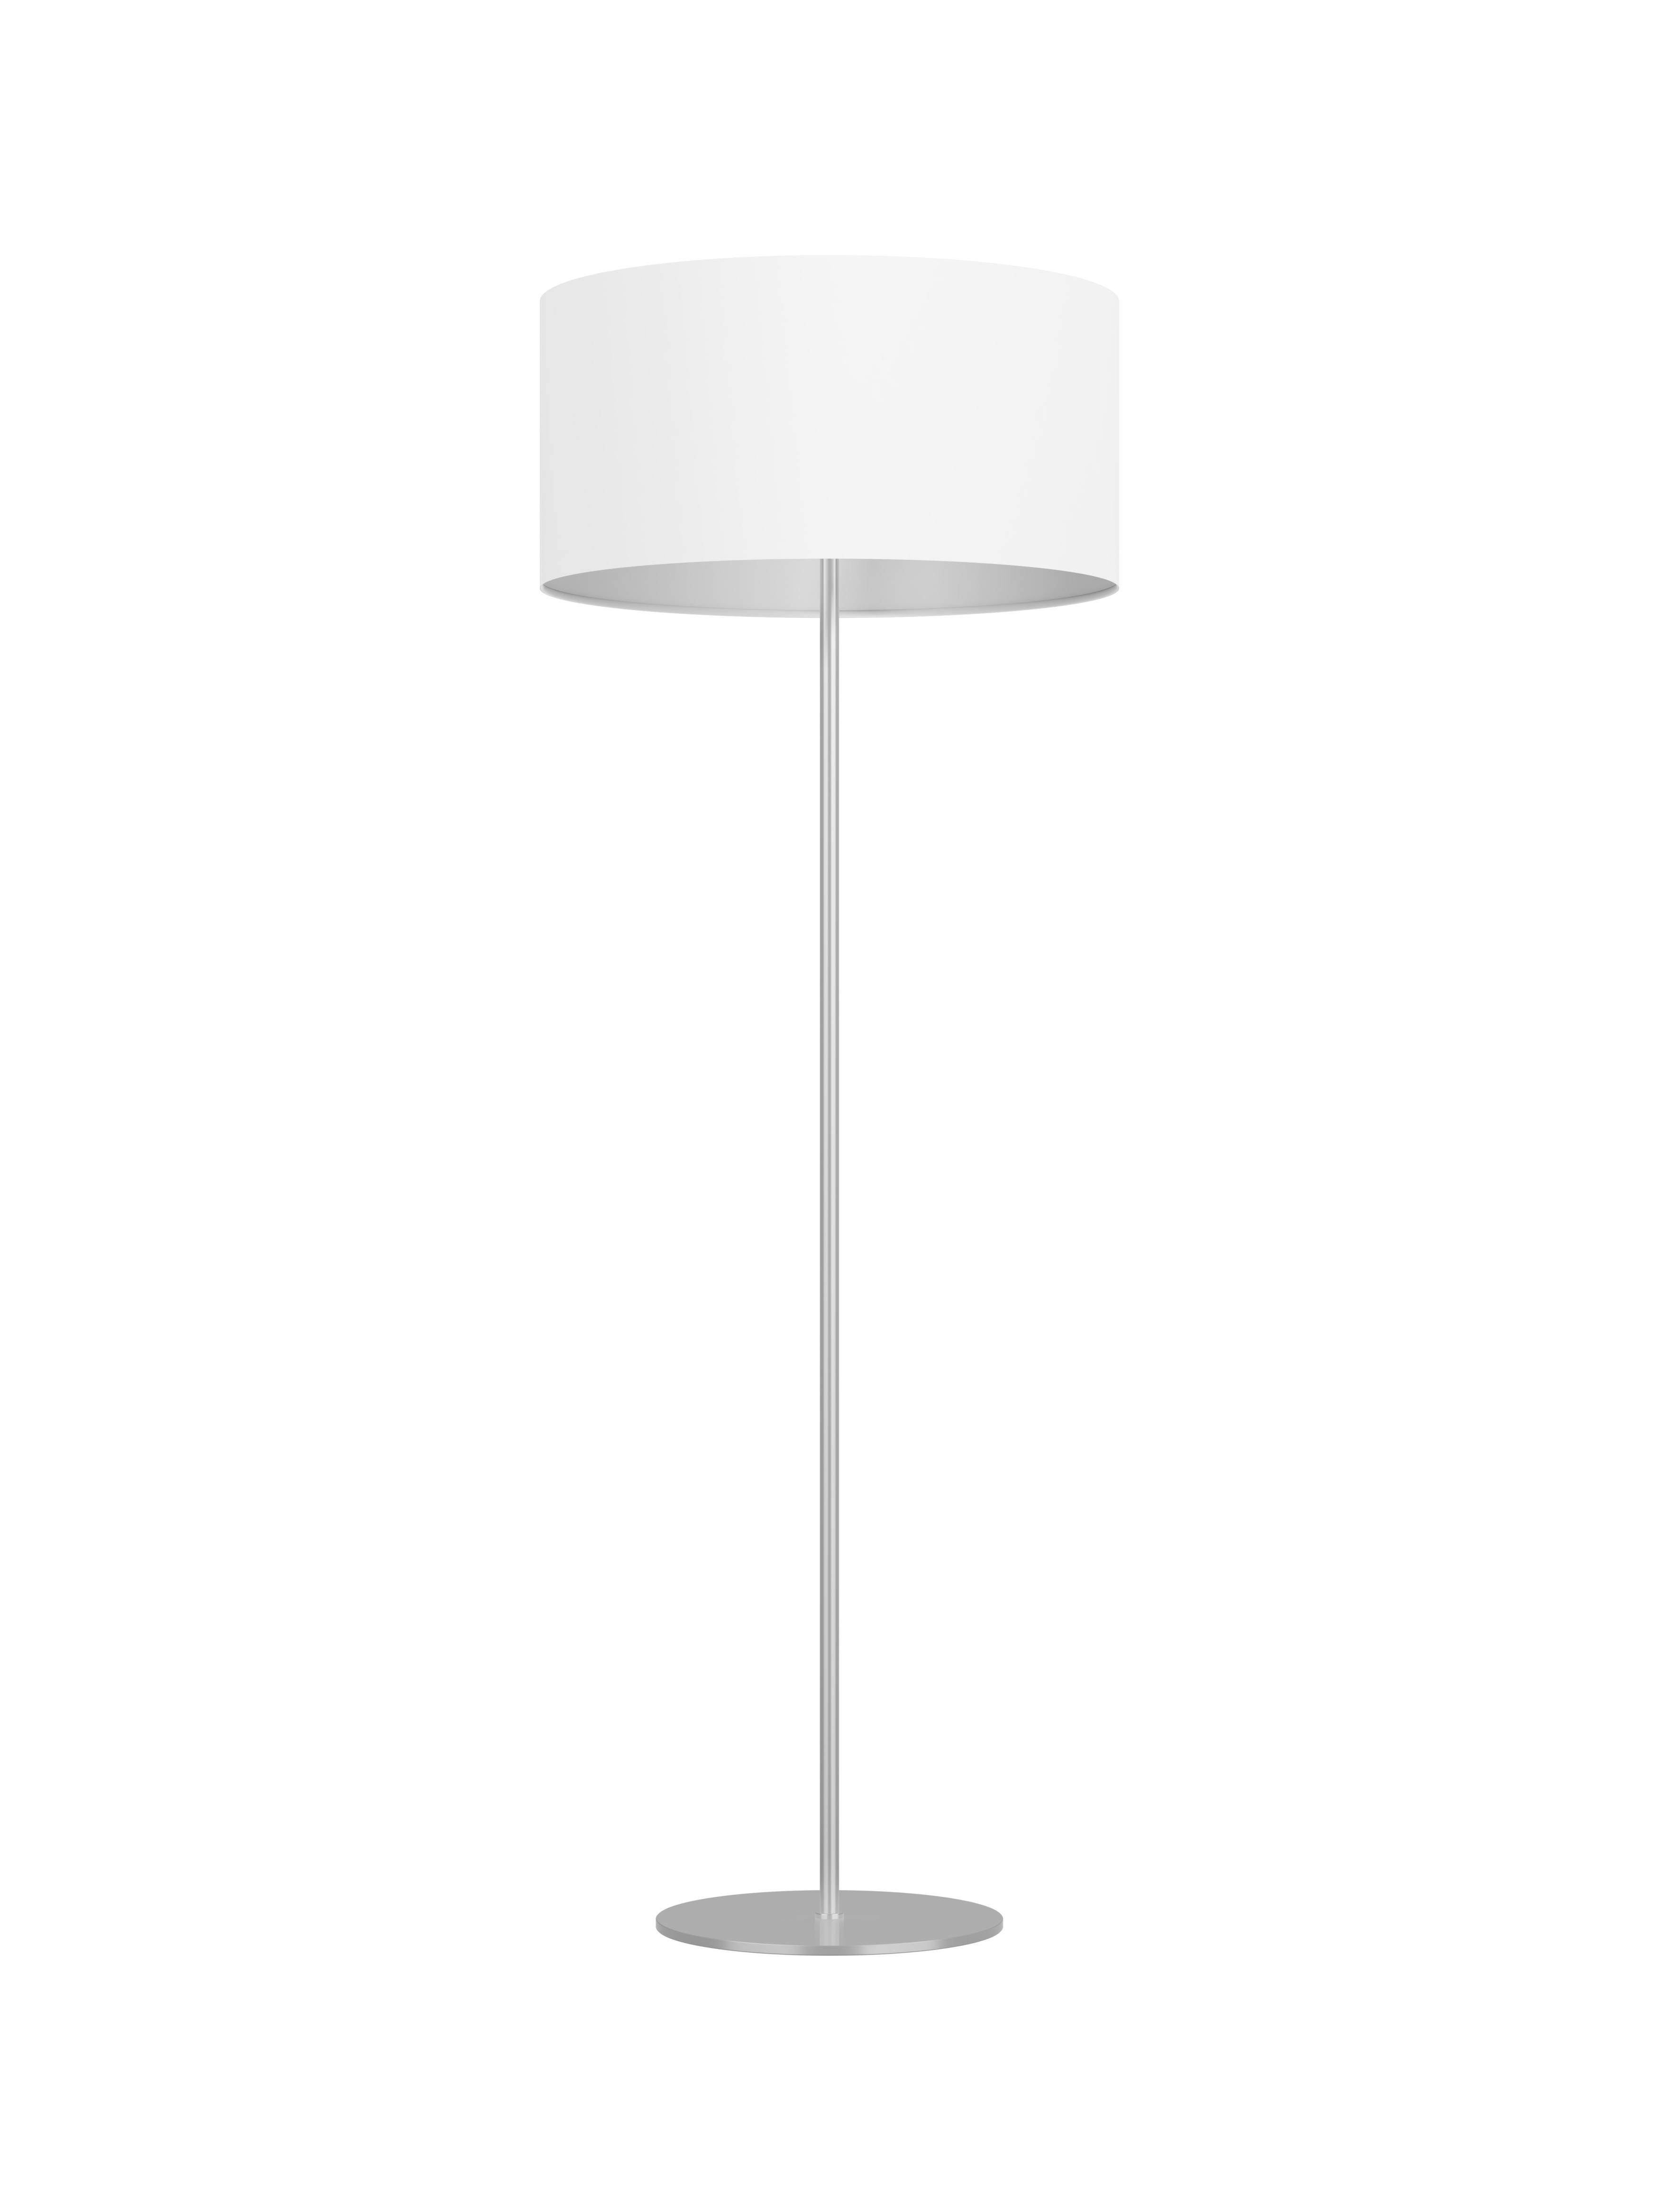 Ako vybrať stojacu lampu?